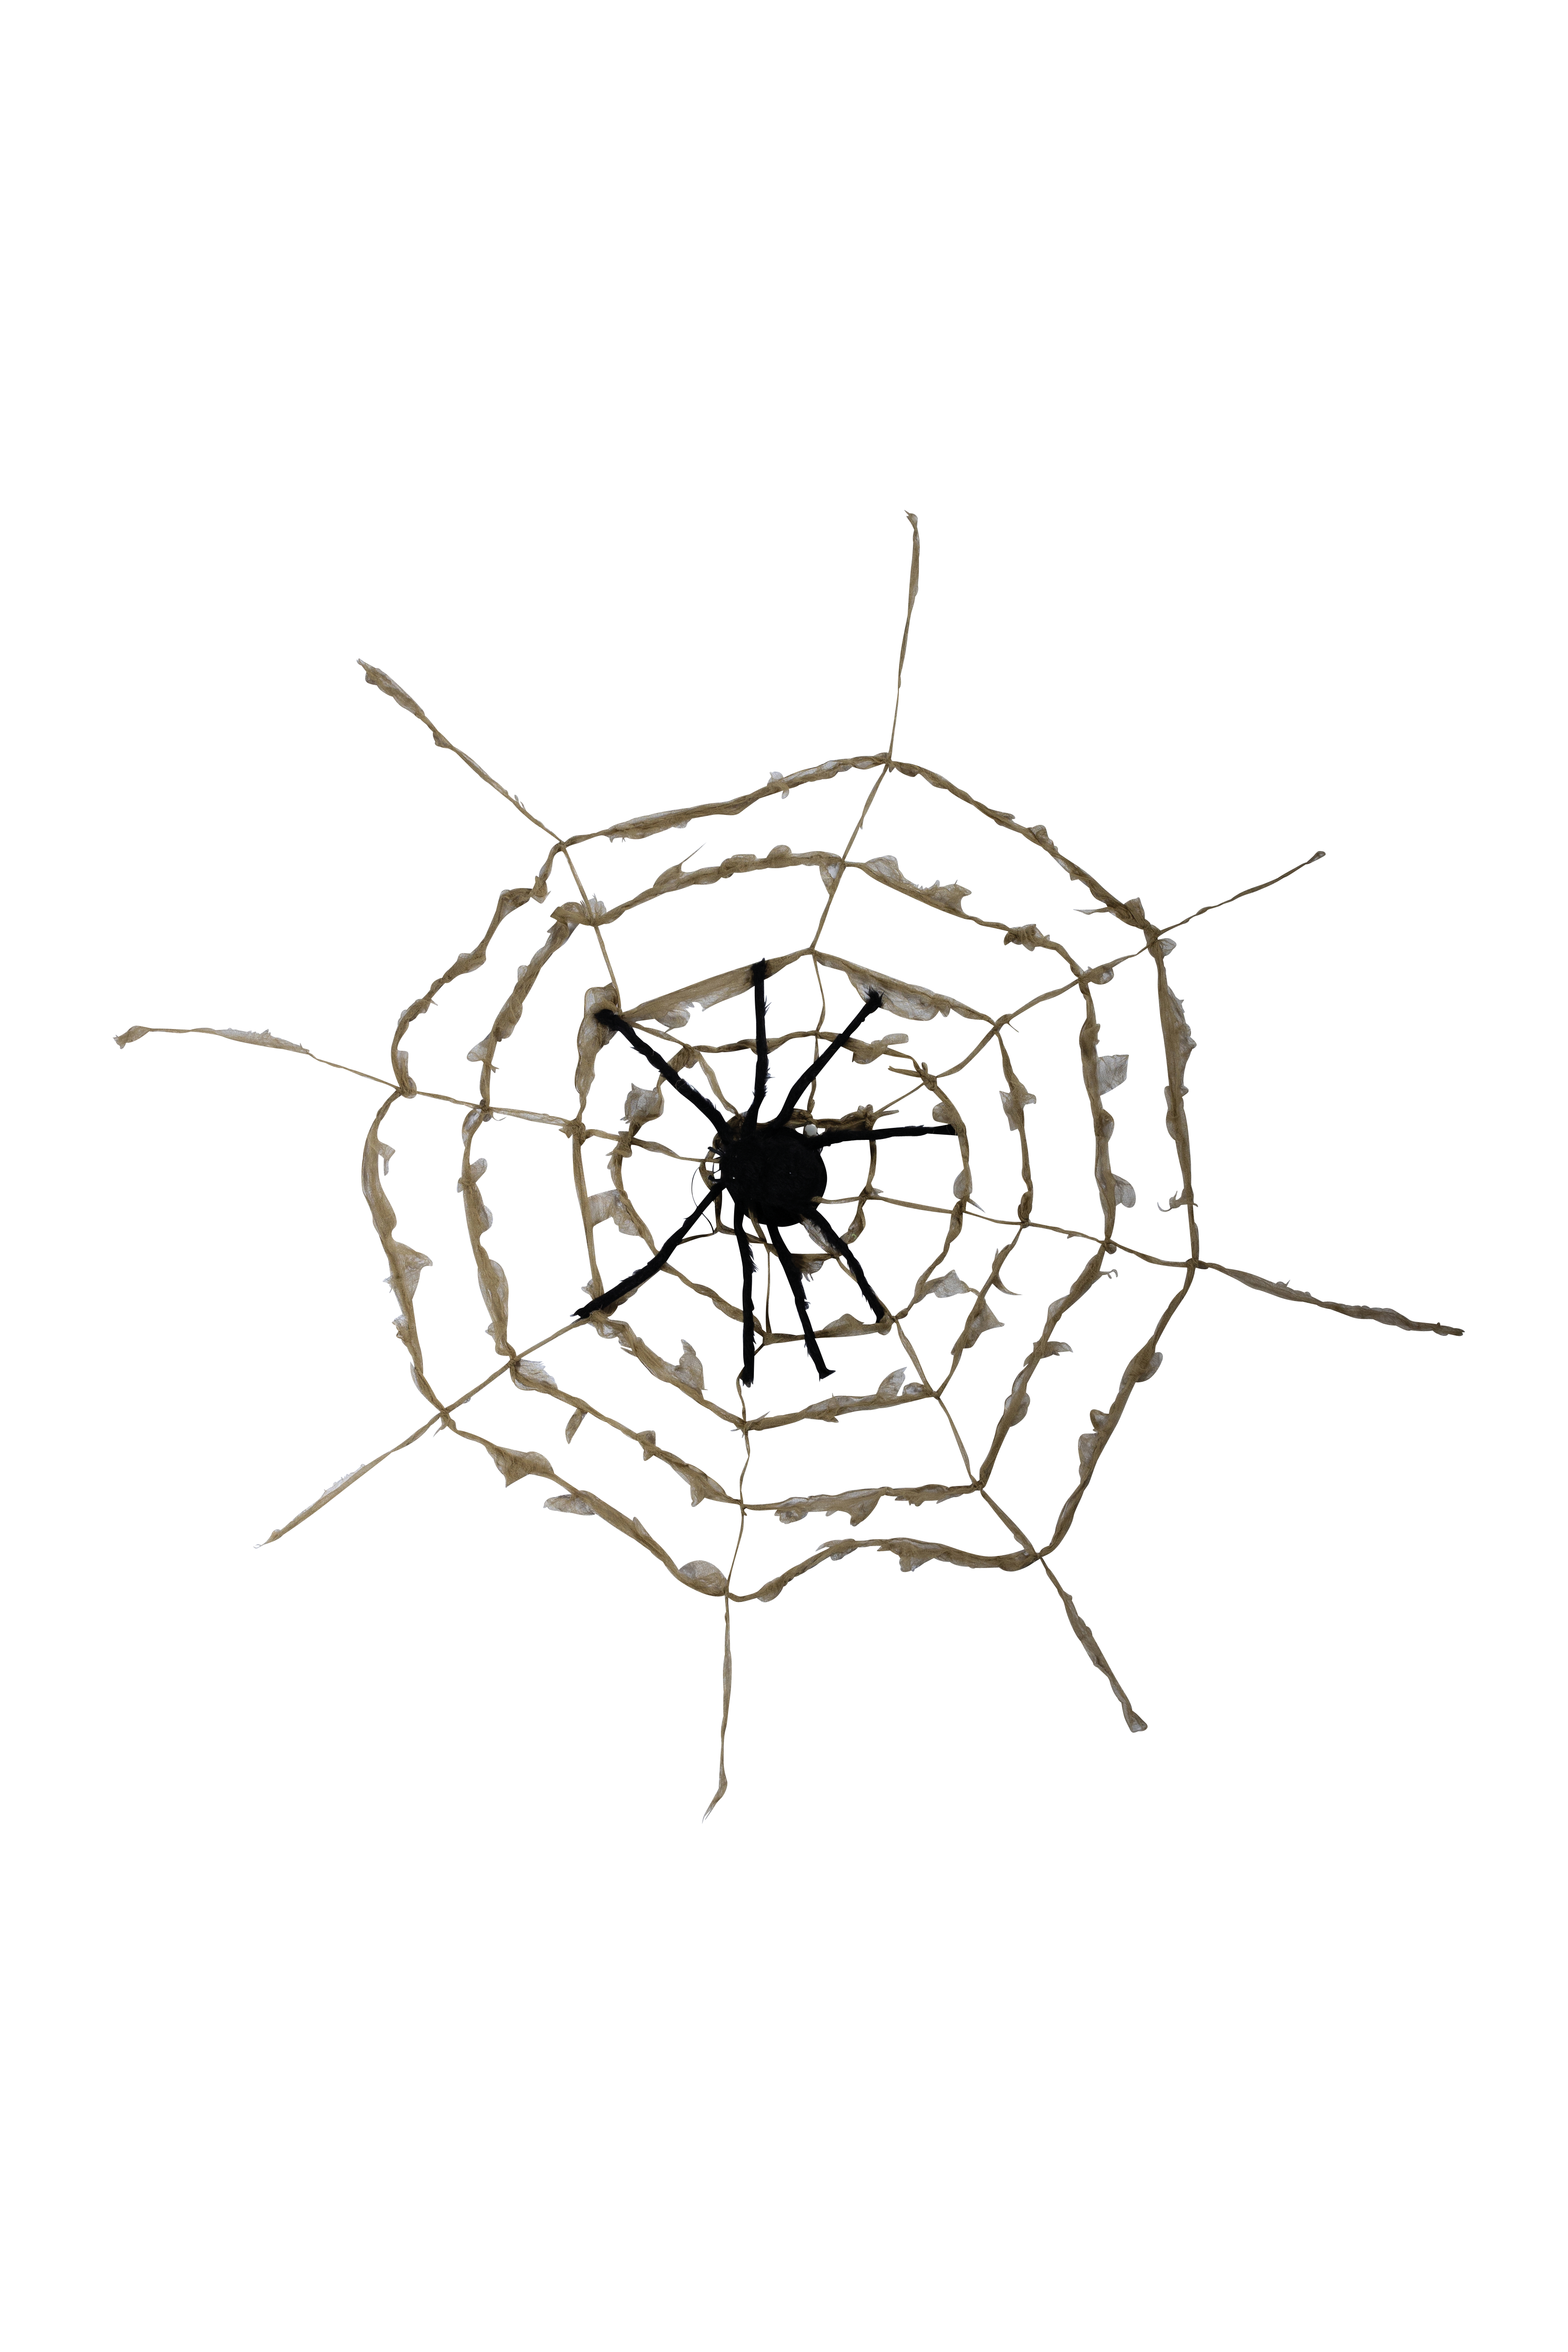 Spinnennetz mit Spinne, Ø 110cm Spinne: 52x23cm aus Styropor/Synthetik-Wolle, mit rotem Licht- und Soundeffekten & vibriert